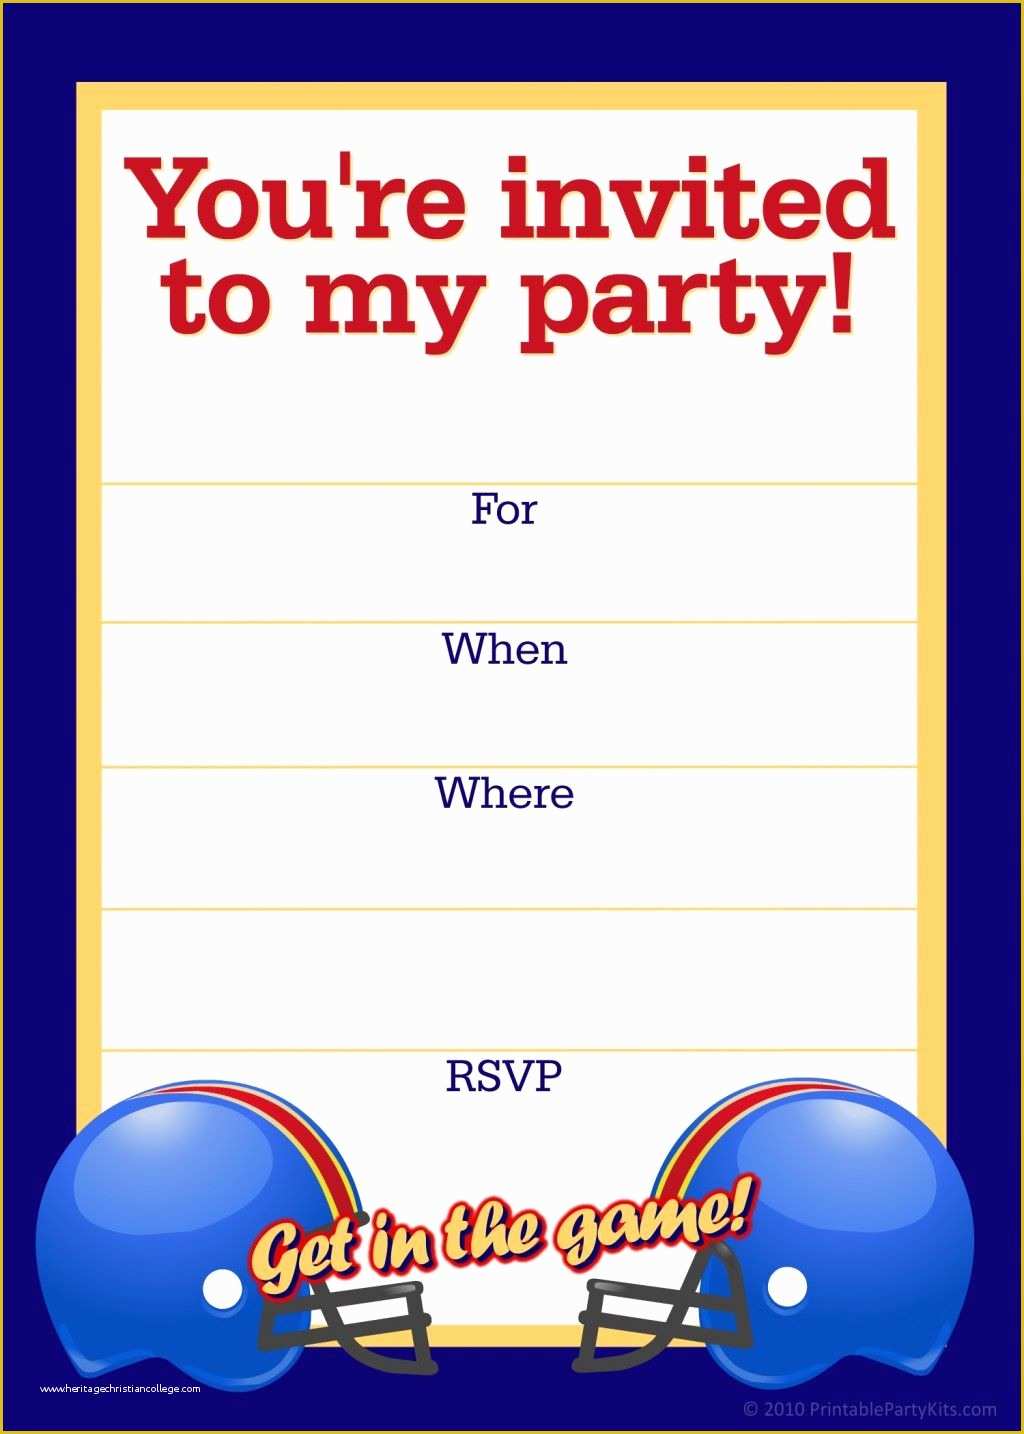 Football Birthday Party Invitation Templates Free Of Free Printable Sports Birthday Party Invitations Templates